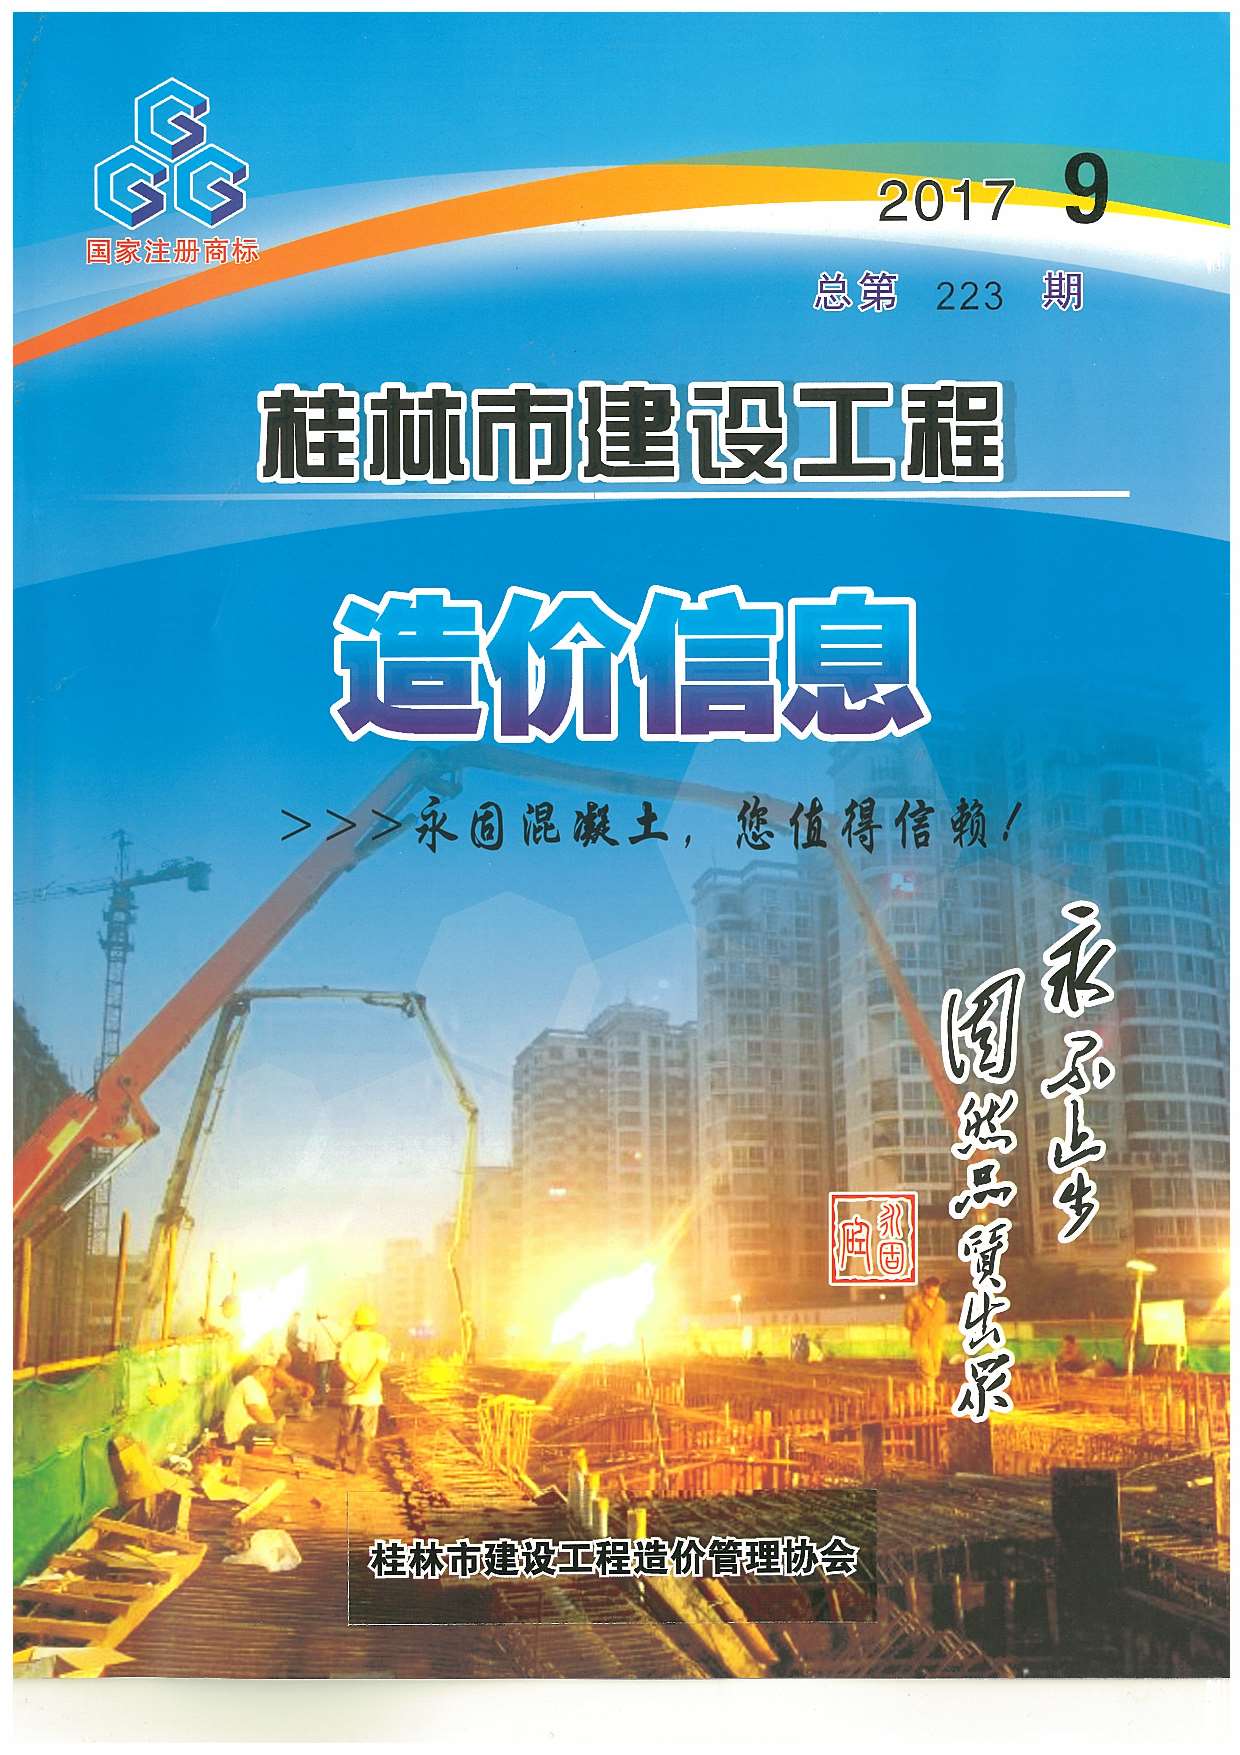 桂林市2017年9月建设工程造价信息